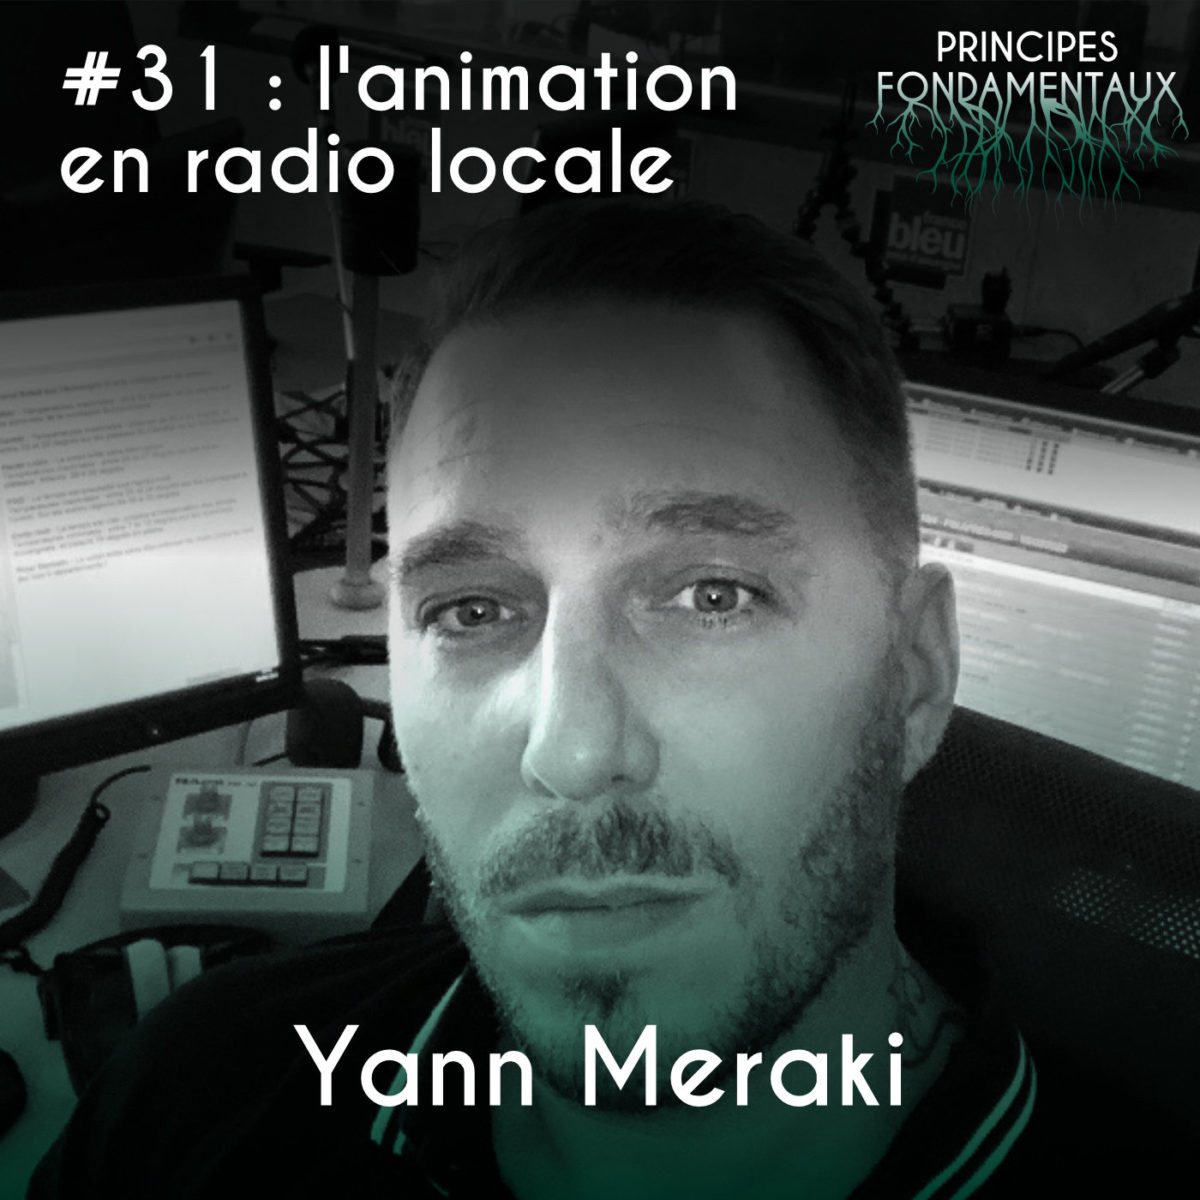 Couverture Podcast #31 : Yann Meraki - l'animation en radio locale